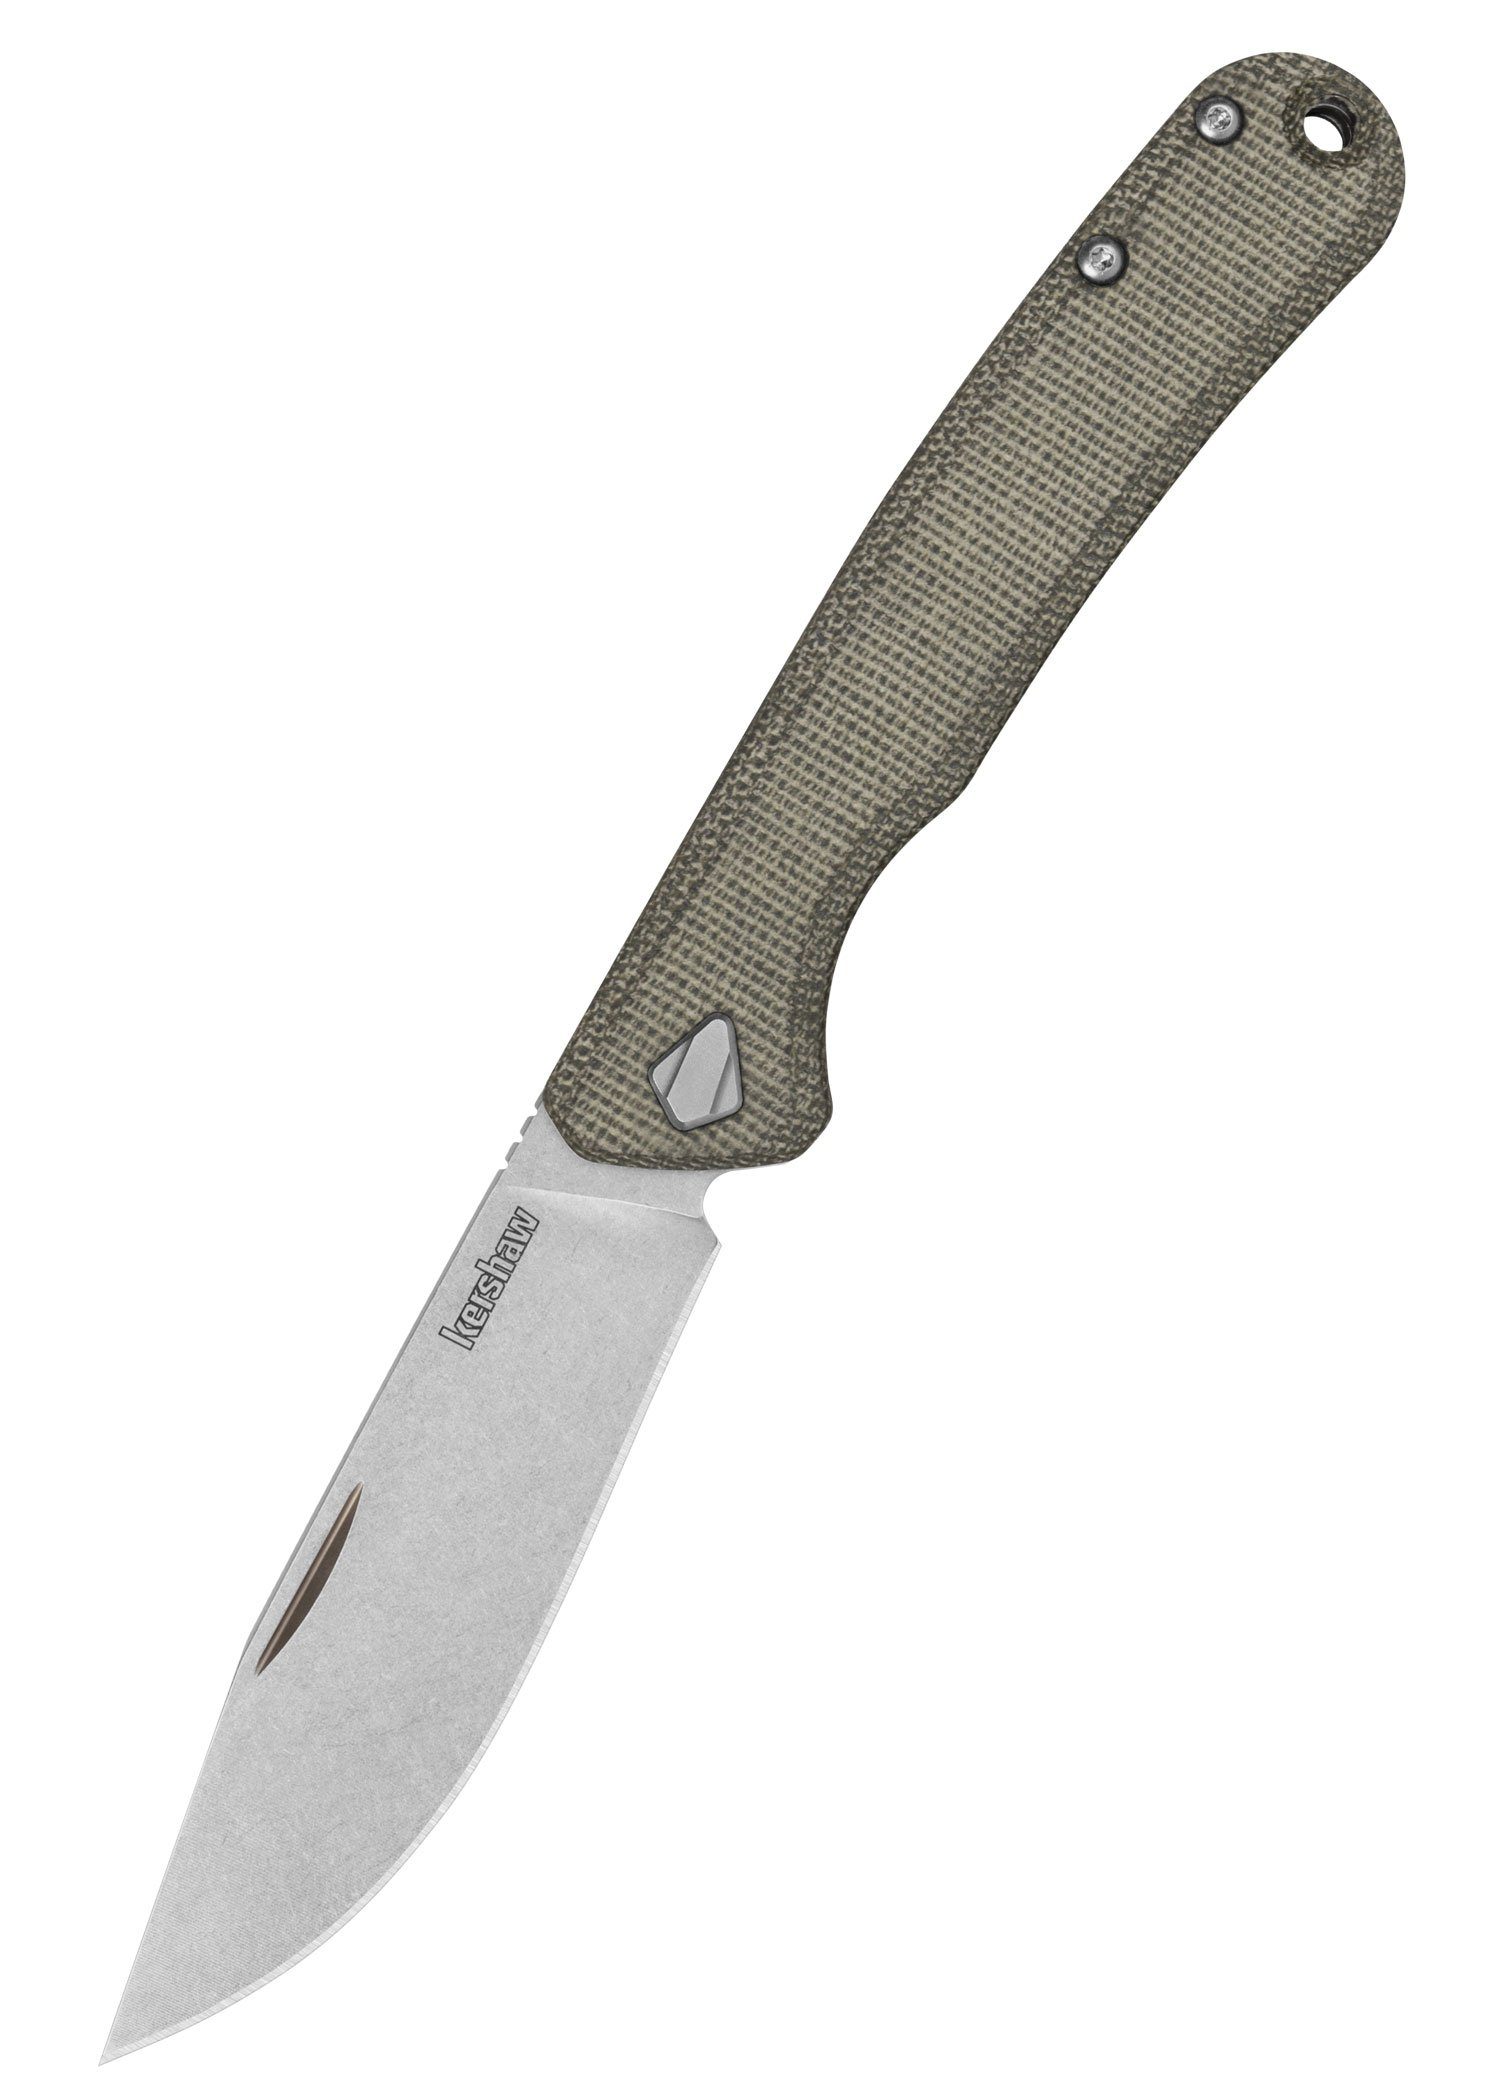 Kershaw Knives Taschenmesser Kershaw Federalist Slipjoint Tachenmesser mit CPM154 - Pulverstahl